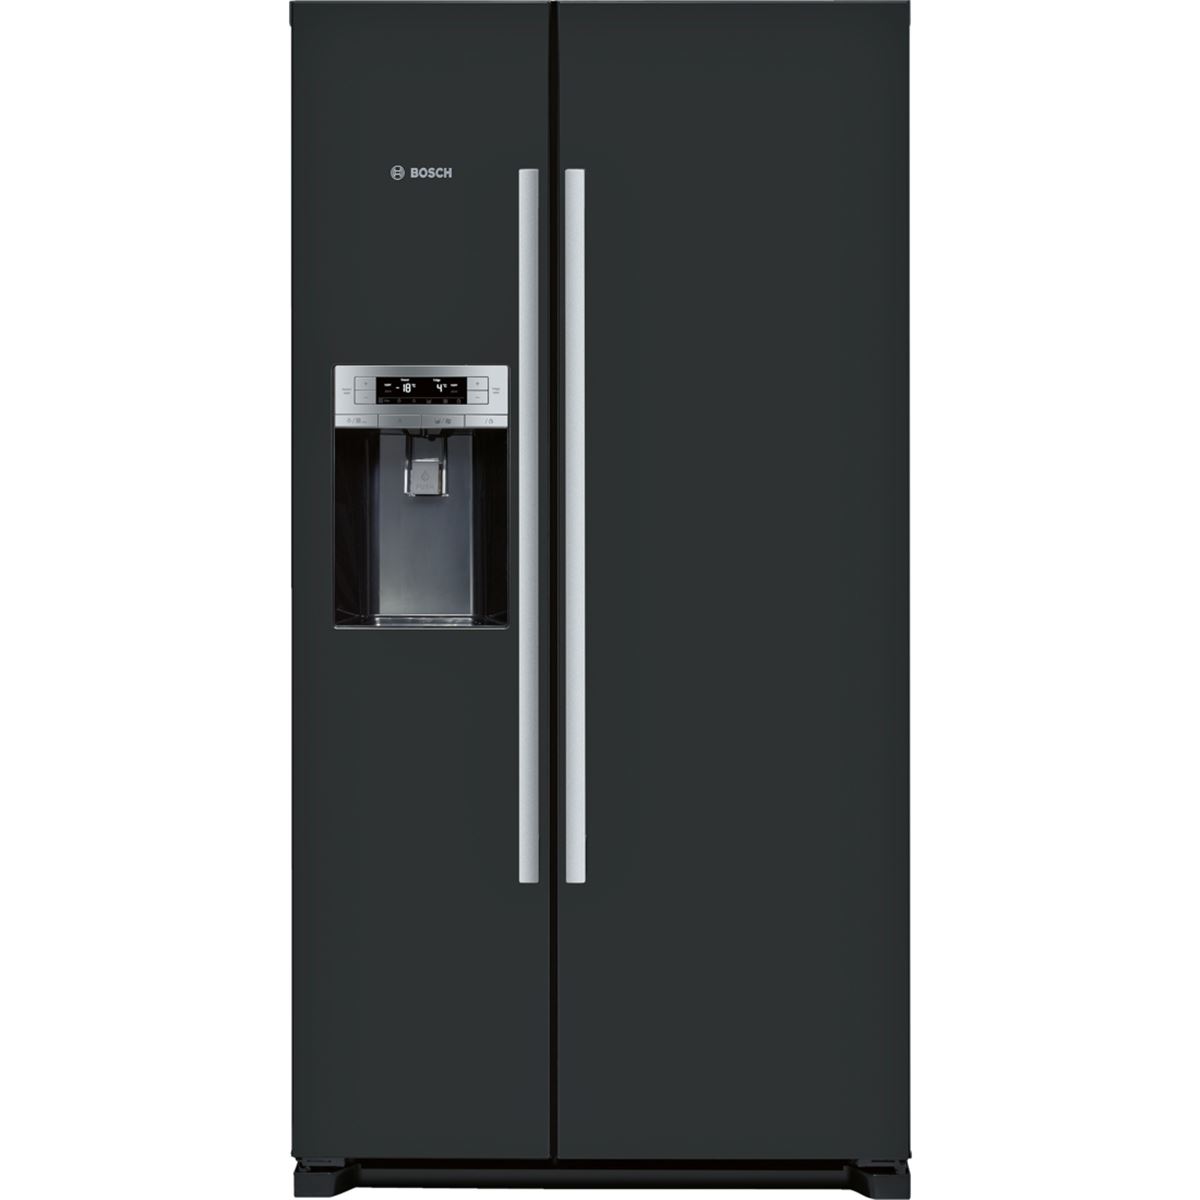 Tủ Lạnh Side By Side Bosch KAD90VB20 Hệ Thống MultiAirflow Lưu Thông Không Khí Liên Tục Ở Tất Cả Cấp Độ